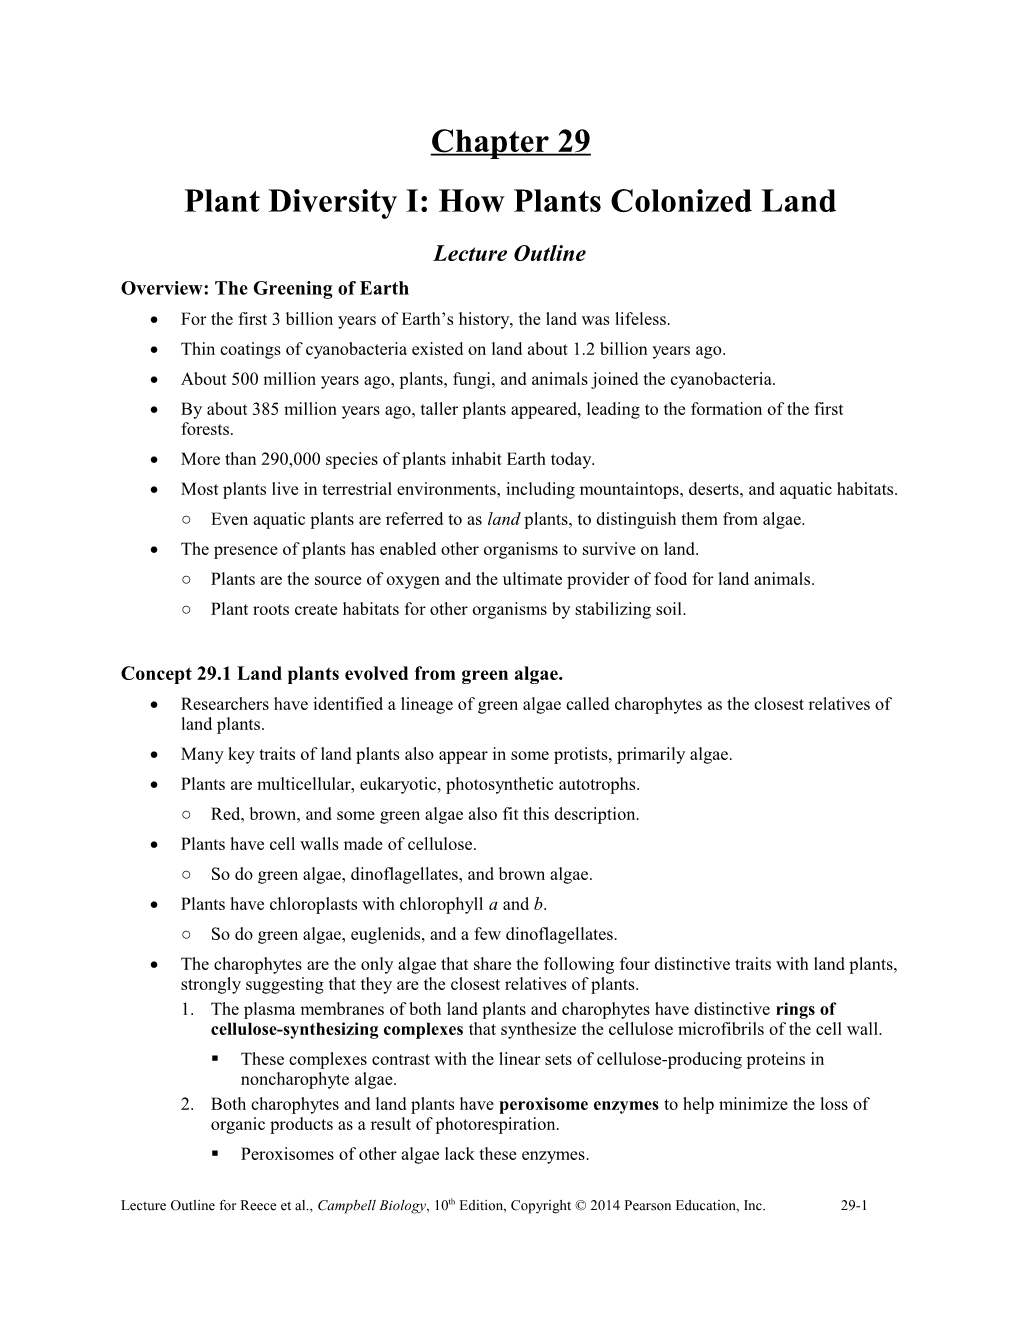 Plant Diversity I: How Plants Colonized Land